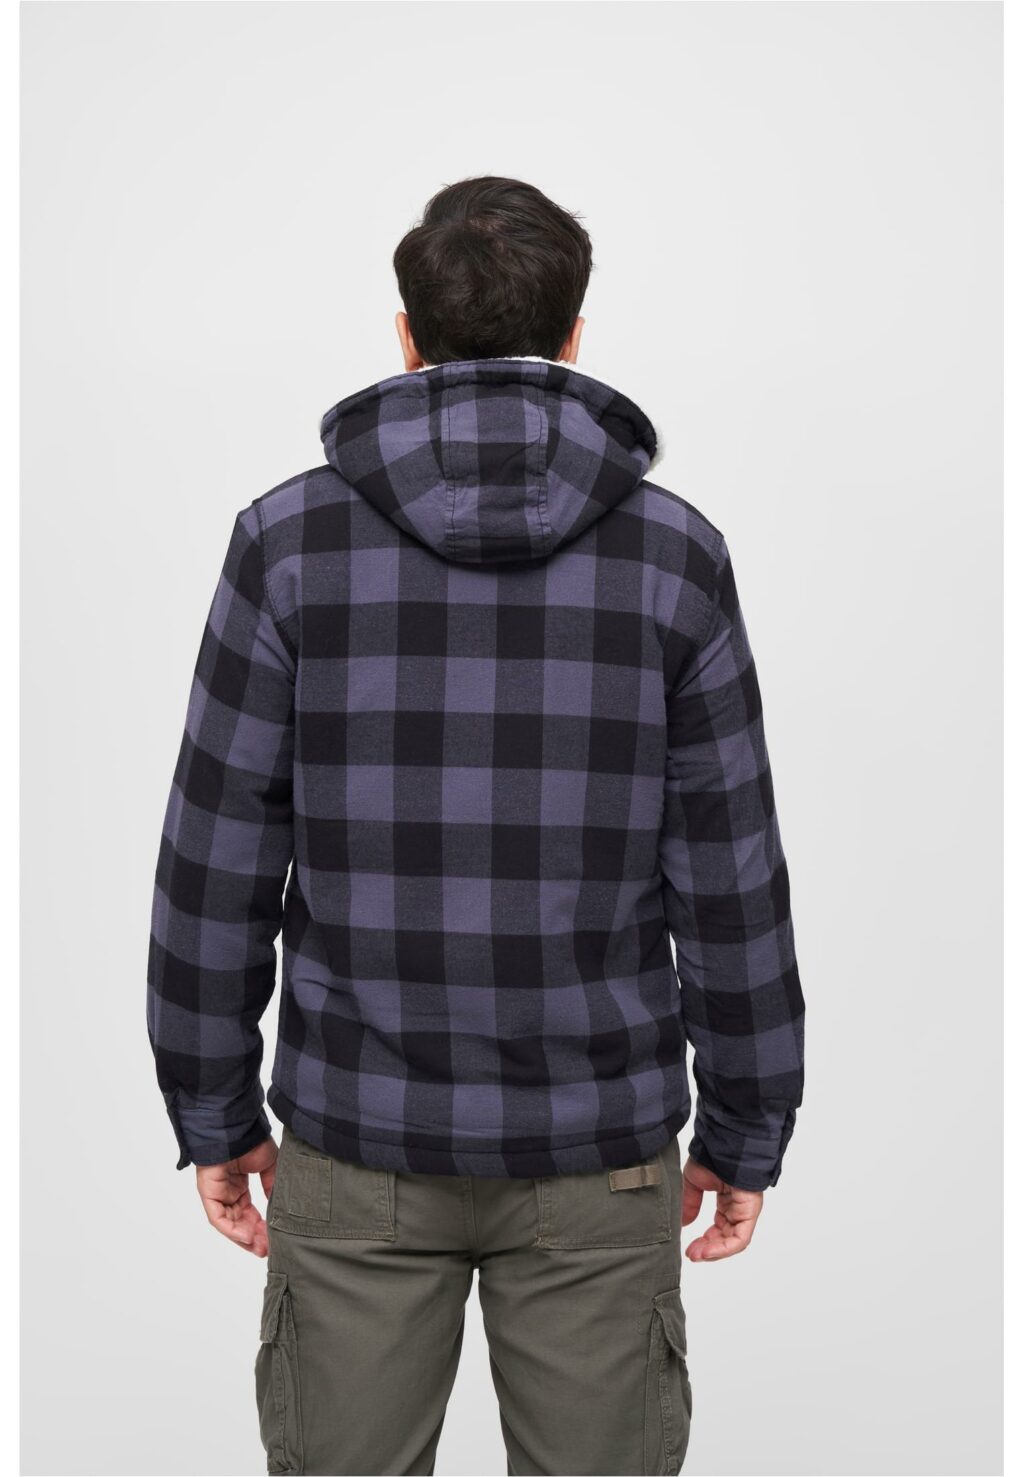 Brandit Lumberjacket hooded black/grey BD3172